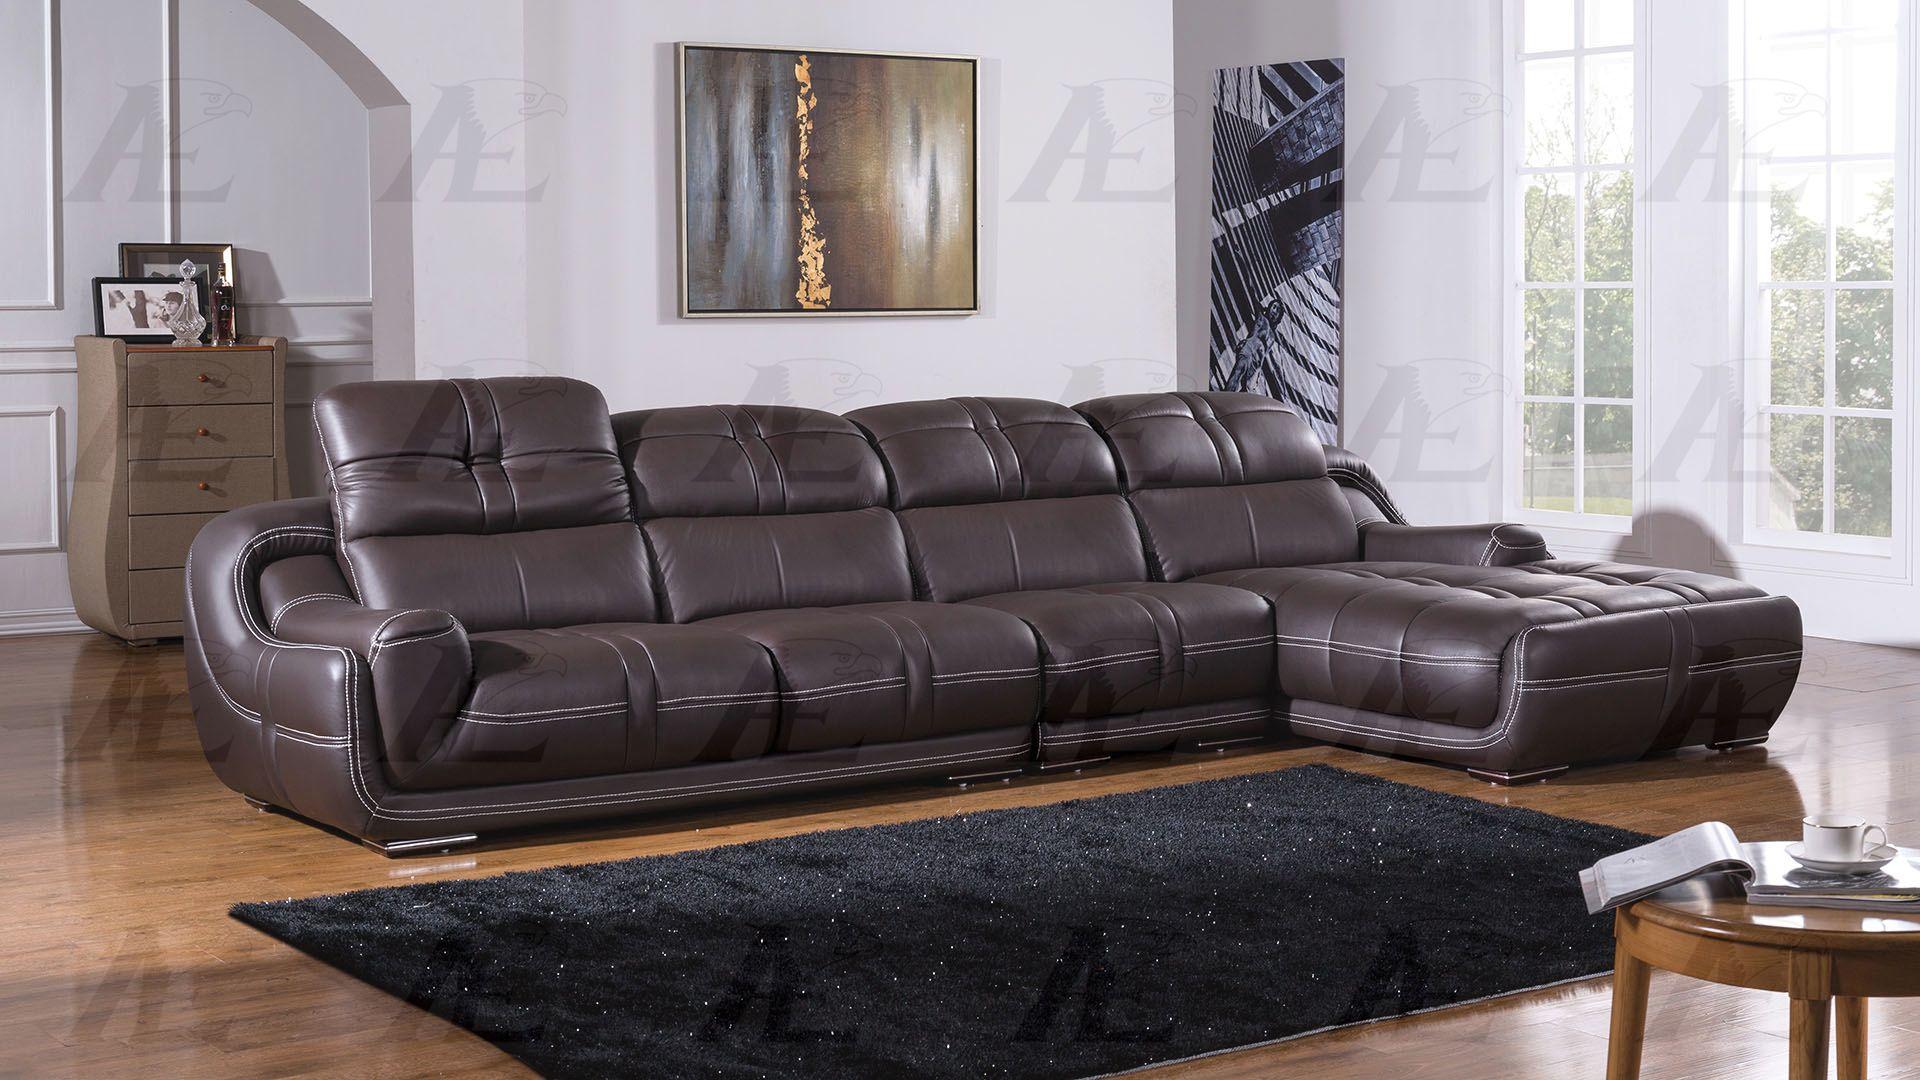 

    
EK-L201-DB Sectional Sofa
